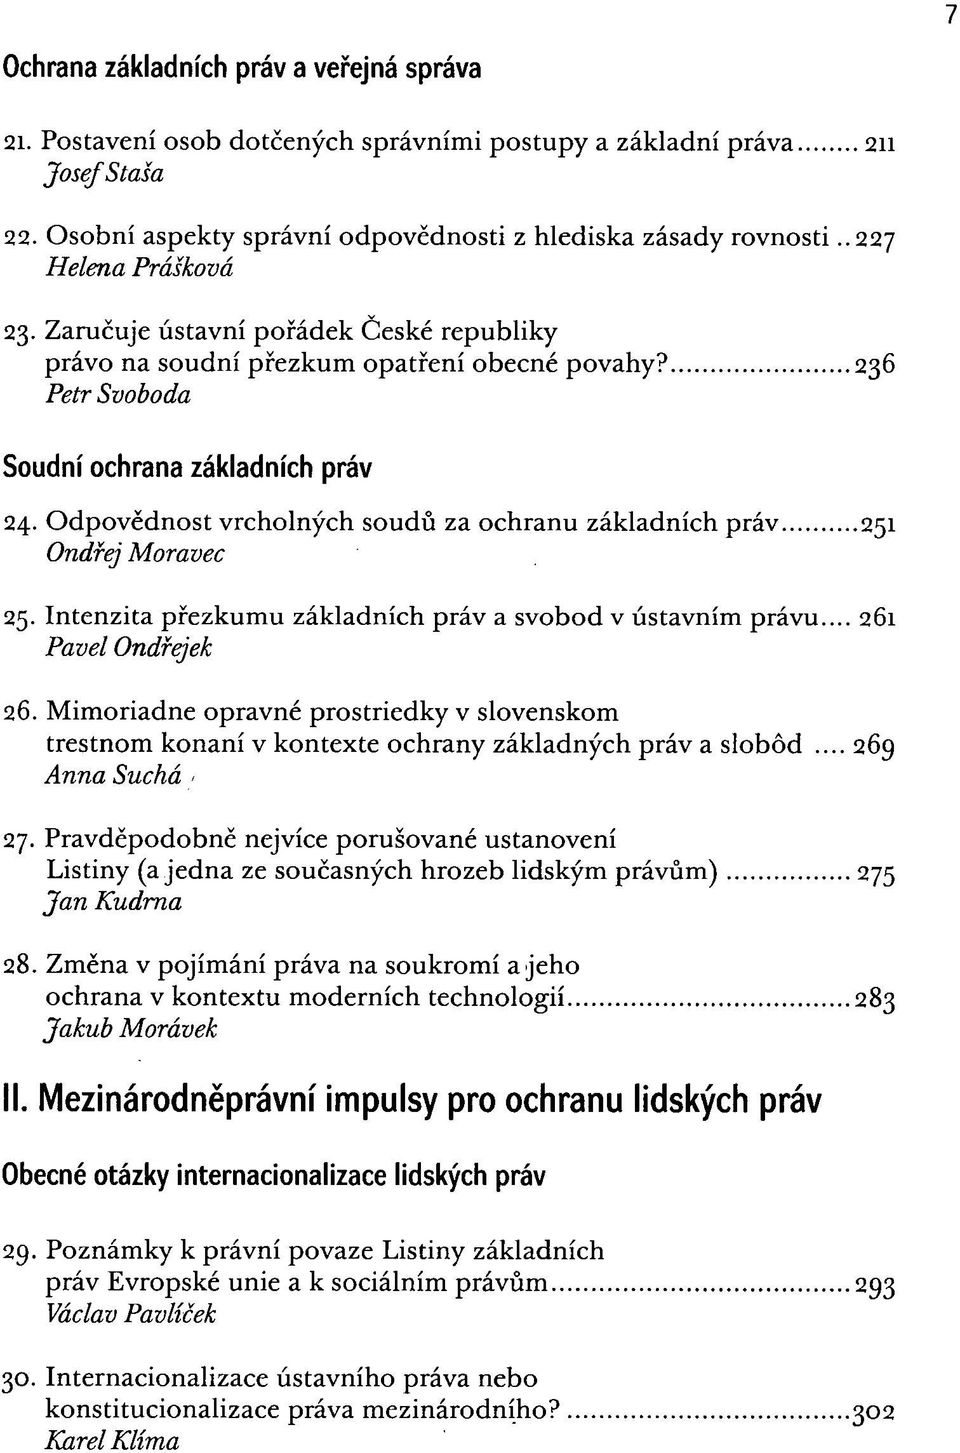 Odpovědnost vrcholných soudů za ochranu základních práv 251 Ondřej Moravec 25. Intenzita přezkumu základních práv a svobod v ústavním právu... 261 Pavel Ondřejek 26.